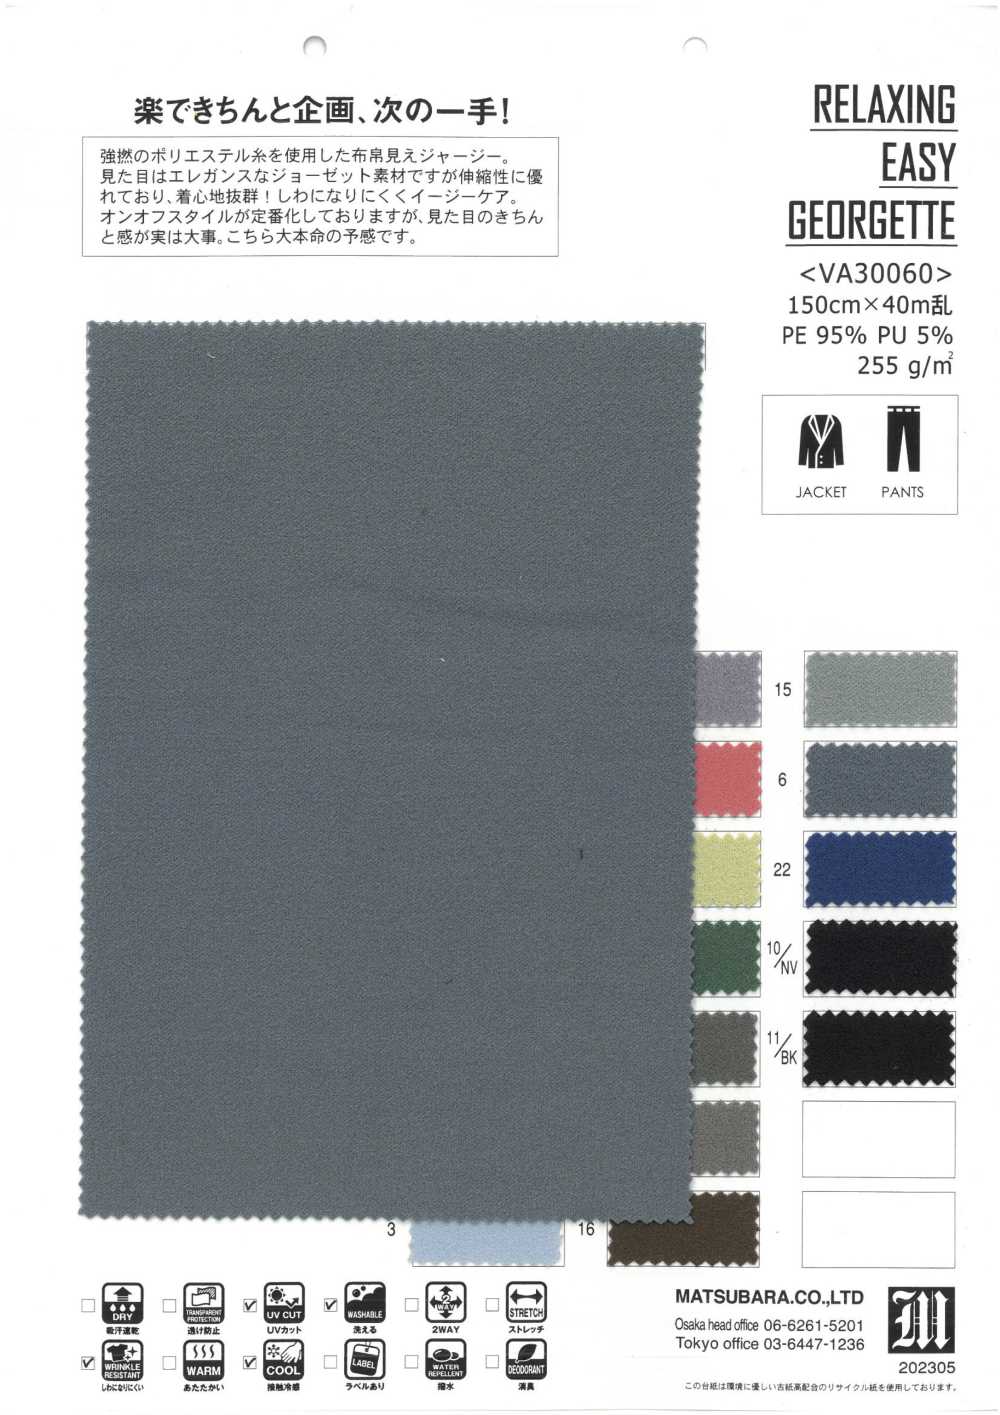 VA30060 ENTSPANNENDES EINFACHES GEORGETTE[Textilgewebe] Matsubara